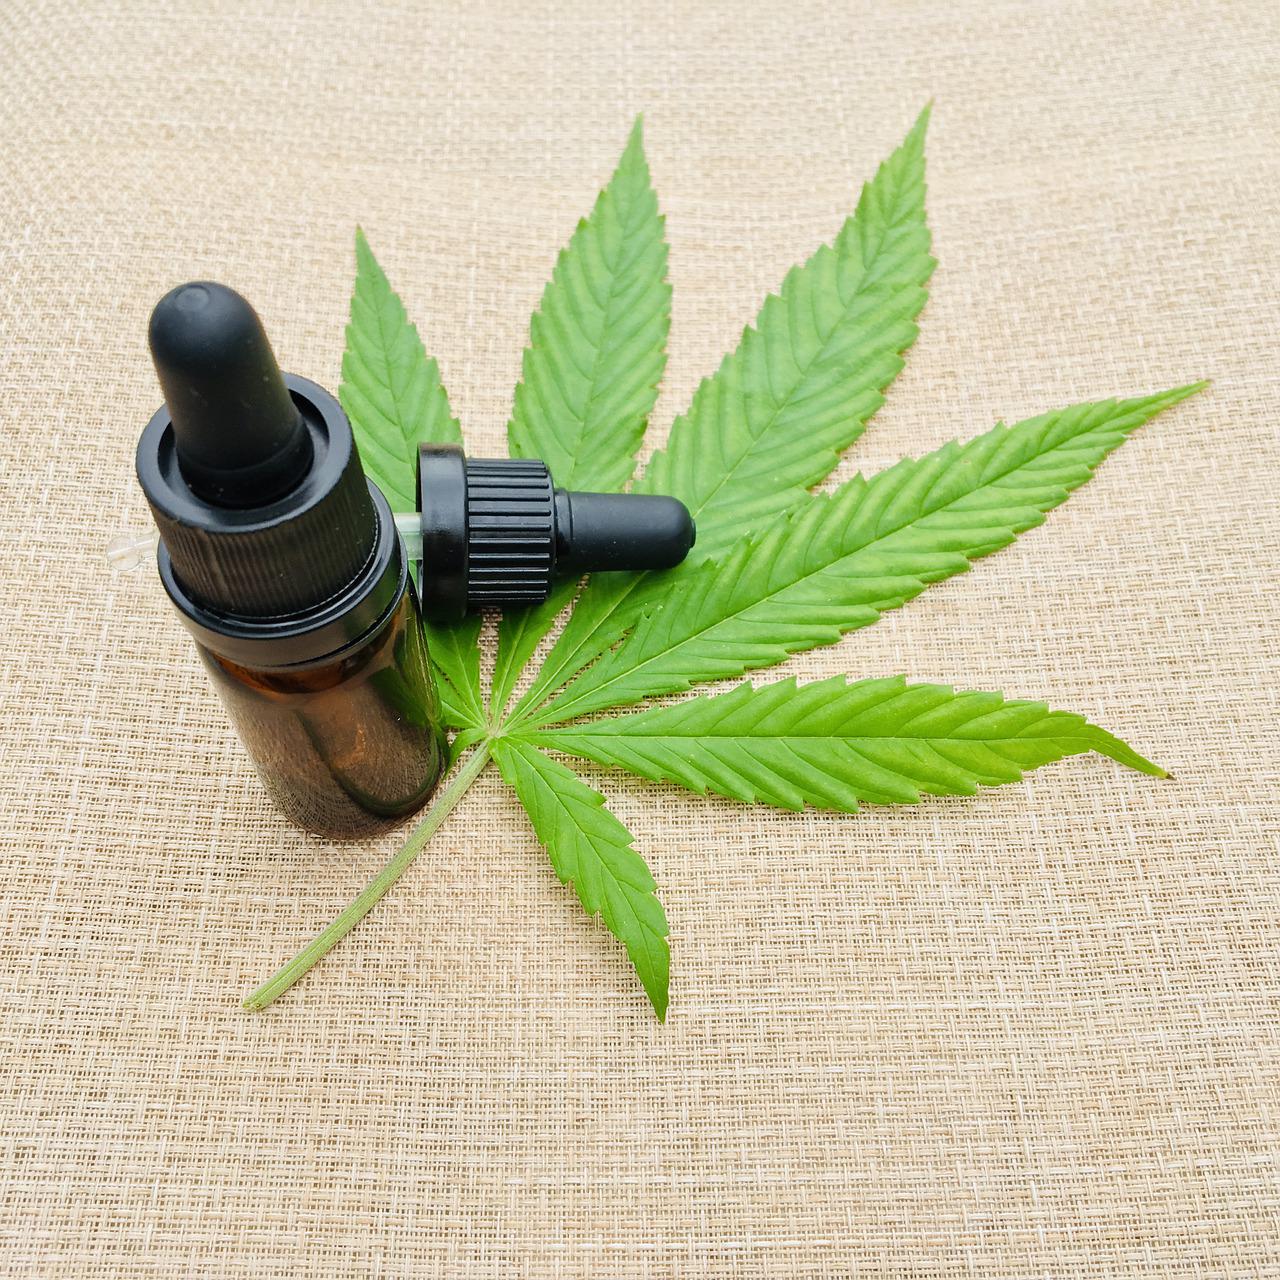 La subcomisión sobre cannabis medicinal dio luz verde a la propuesta que amplía su uso a otras patologías